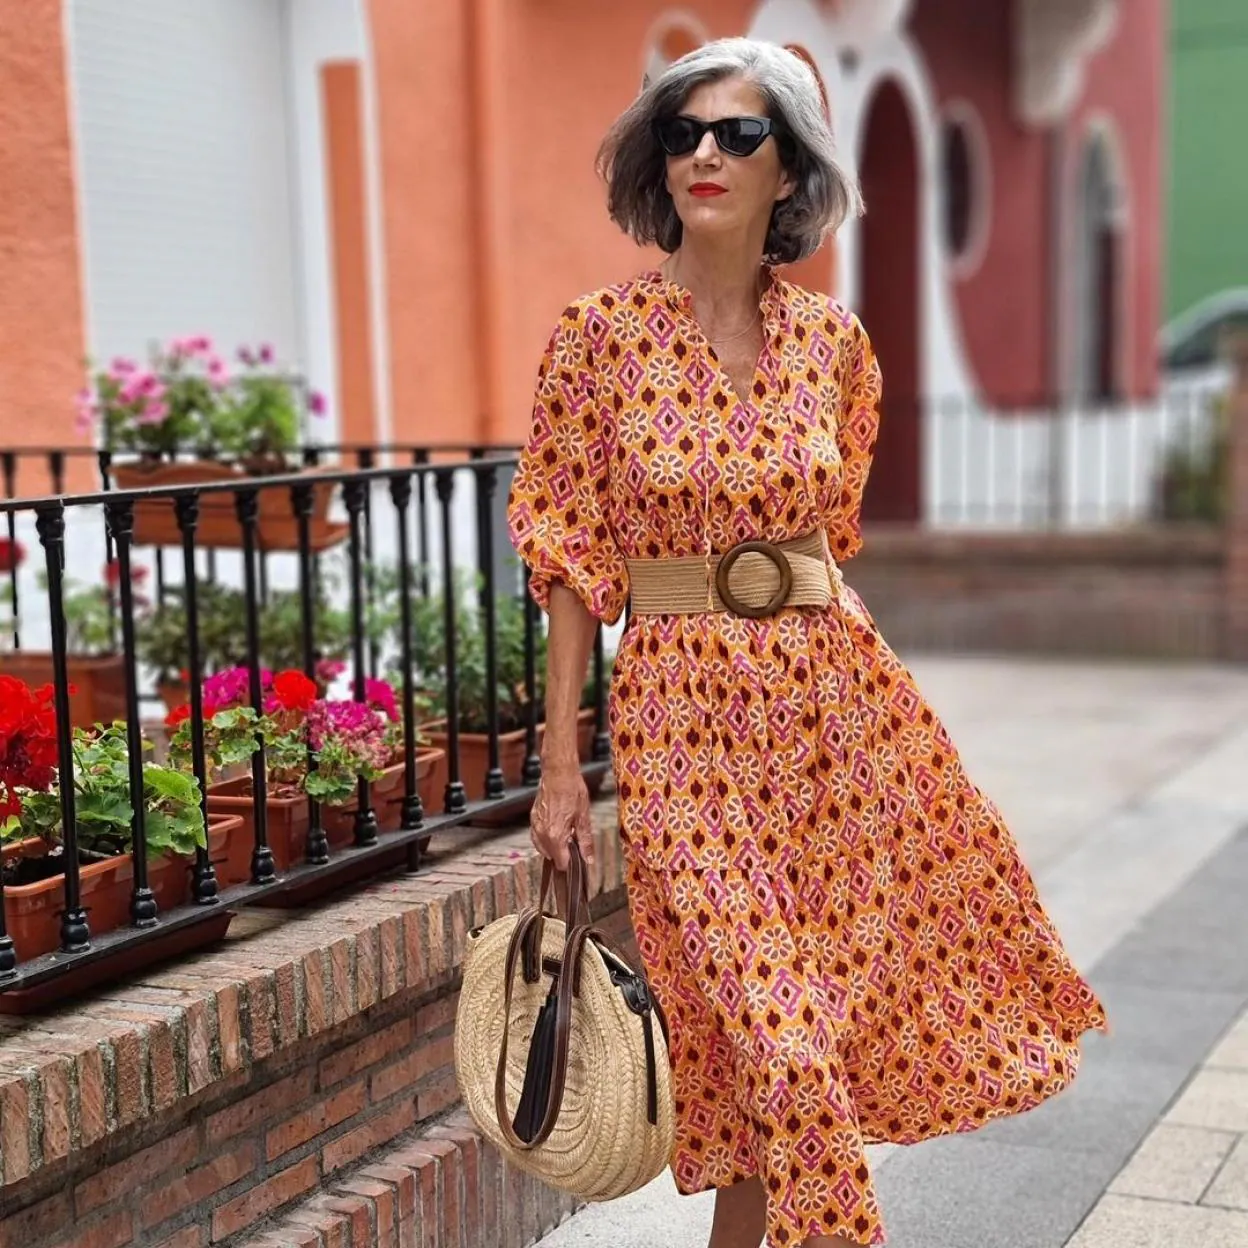 Flechazo con este look que adoran las influencers 50 años: vestido zapatillas | Mujer Hoy